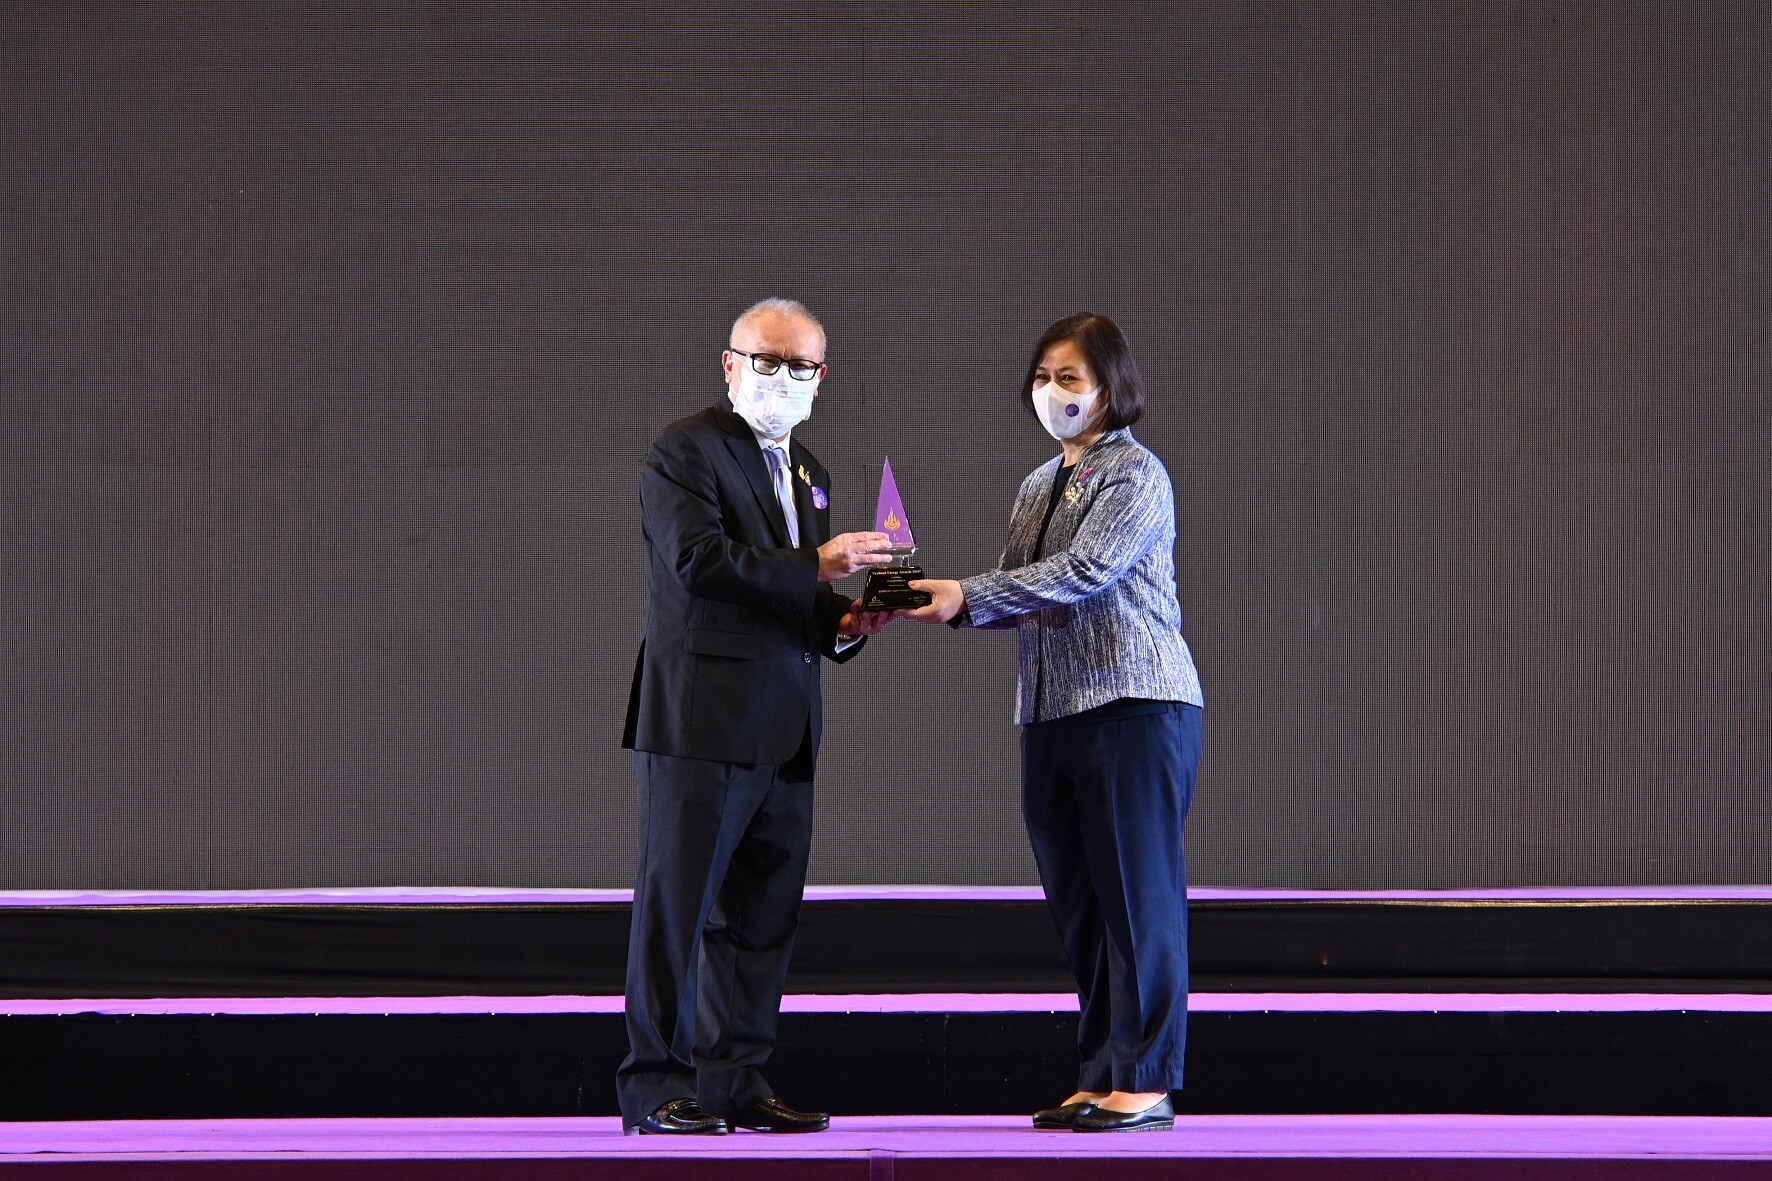 ไบเทค คว้ารางวัล Thailand Energy Award เดินหน้าองค์กรรักษ์สิ่งแวดล้อม และบริหารธุรกิจแบบยั่งยืน